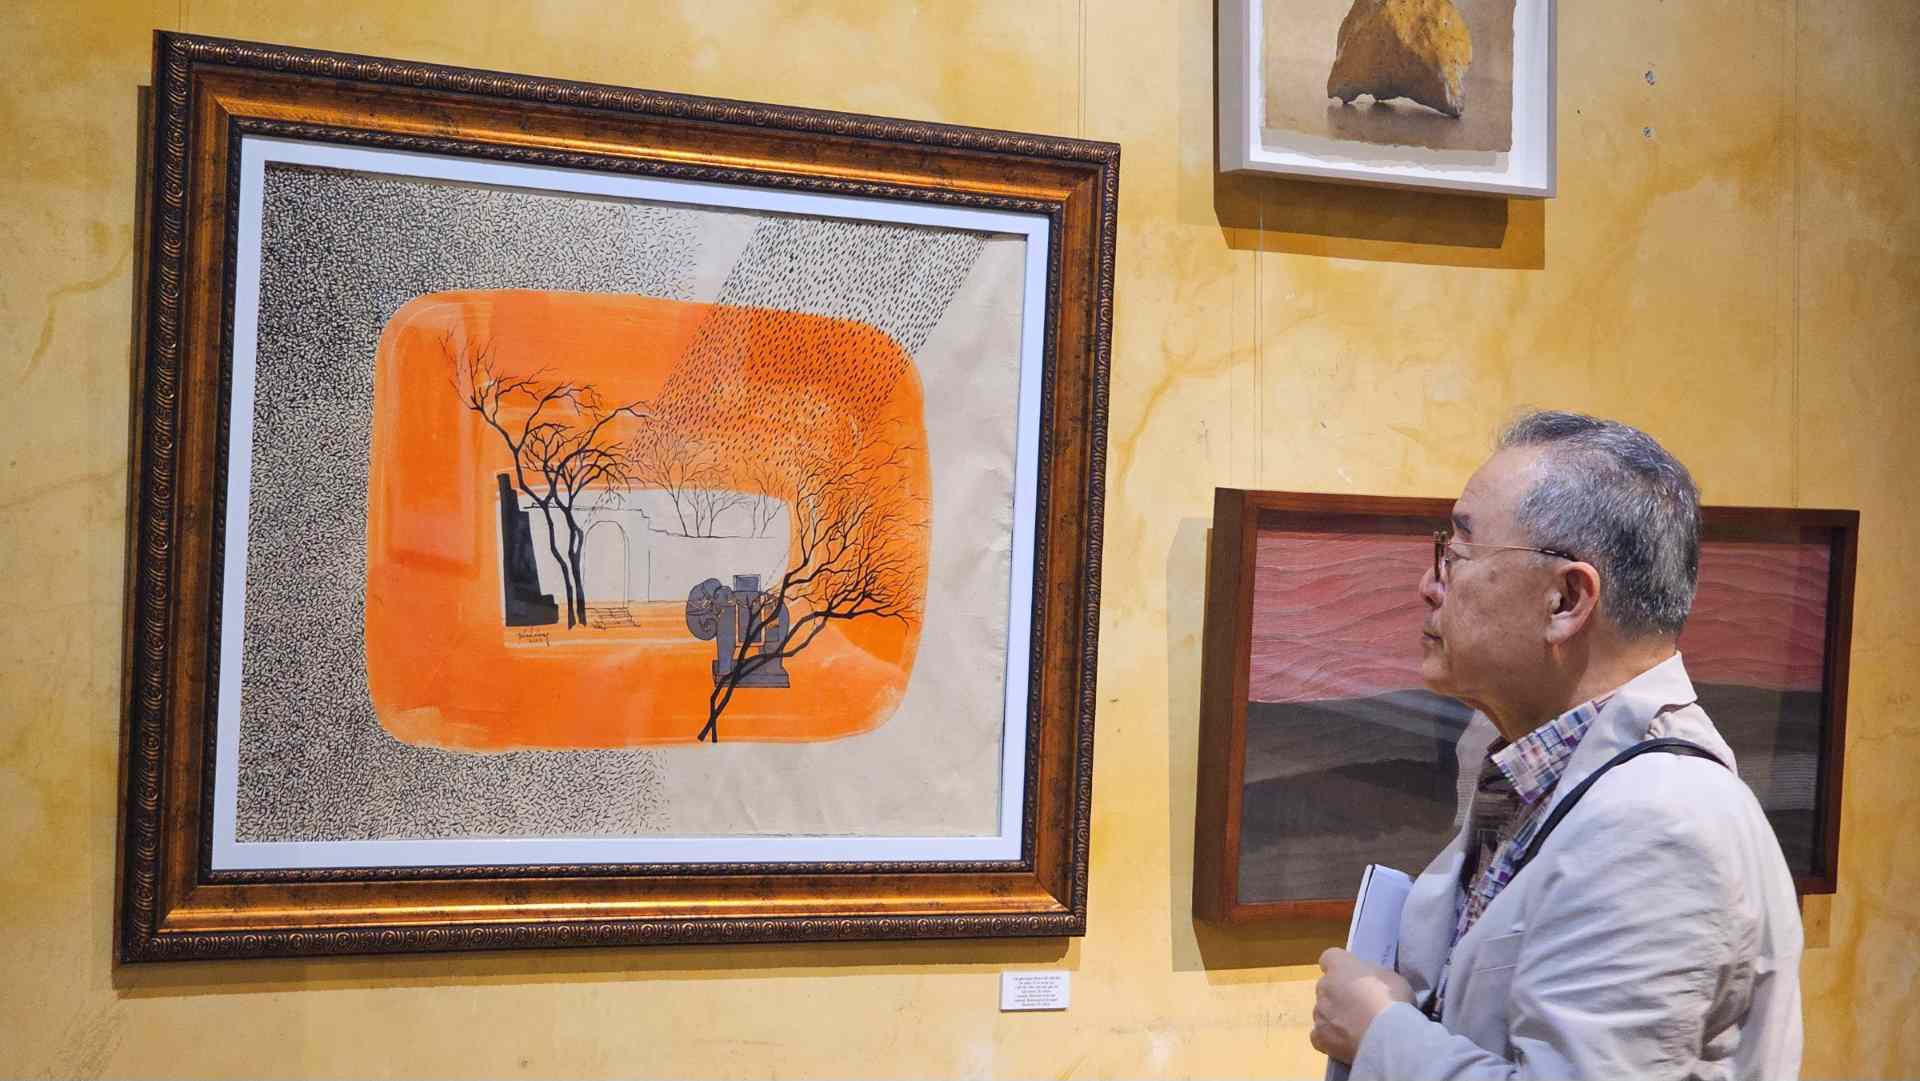 Đặc biệt là các kỳ Festival Huế, hoạt động giao lưu triển lãm luôn nhận được sự quan tâm của cộng đồng nghệ thuật trong nước và quốc tế. “Song hành”, như đúng tính chất của tên gọi, là một triển lãm tranh nghệ thuật giao lưu, kết nối thông điệp thẩm mỹ giữa hai quốc gia Việt Nam và Hàn Quốc. 